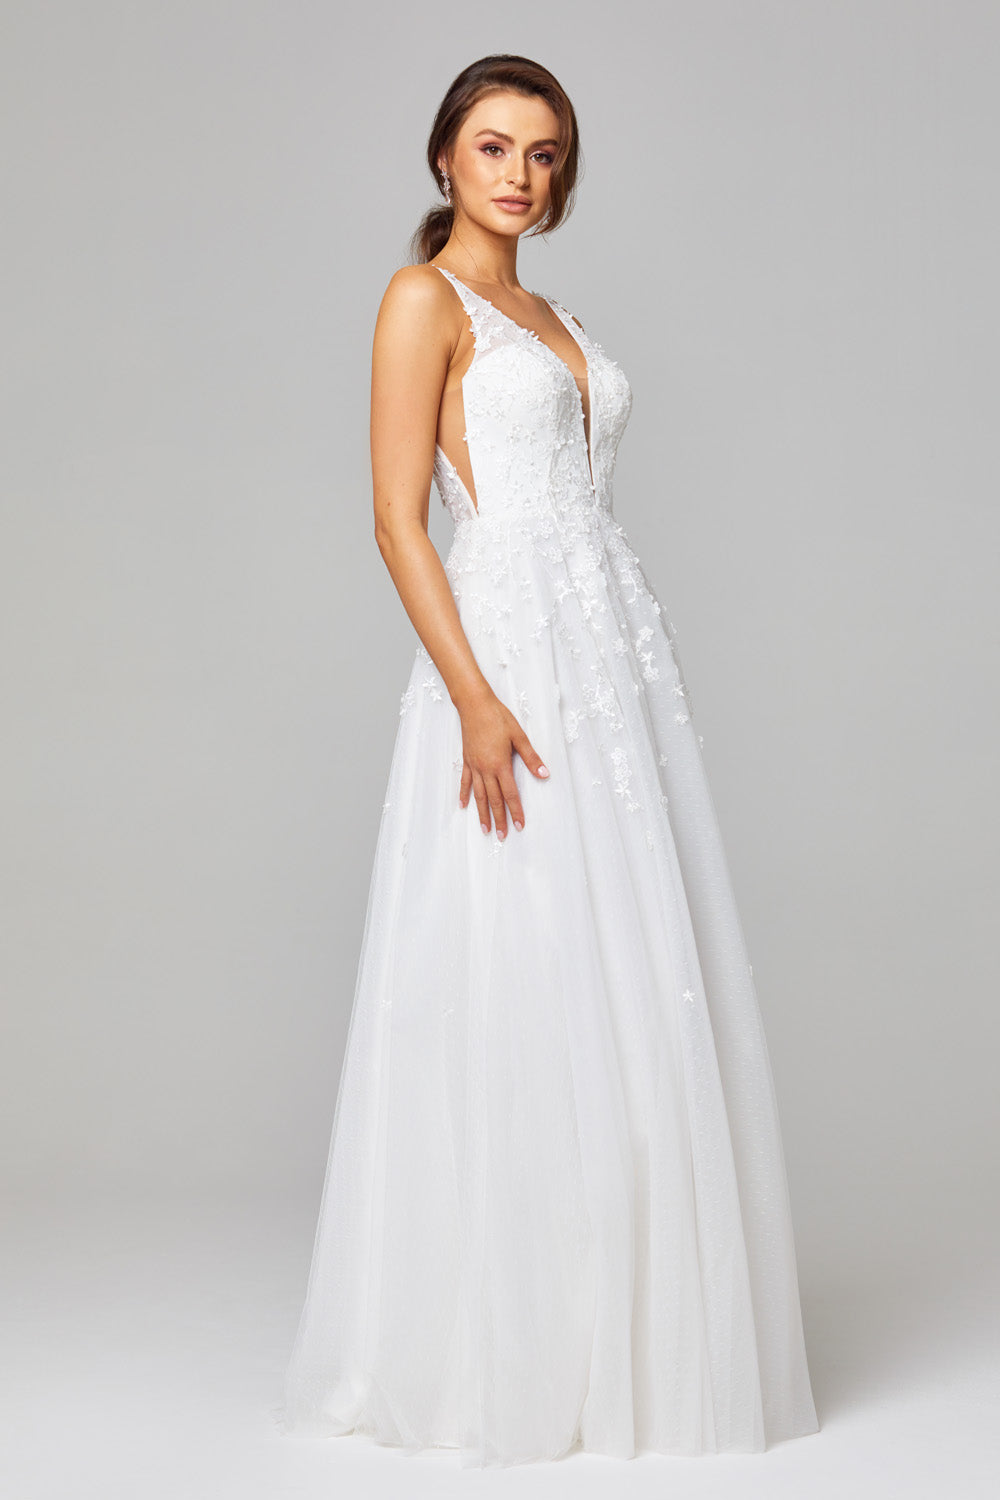 Tania Olsen Bridal TC289 Zara Gown - Vintage White